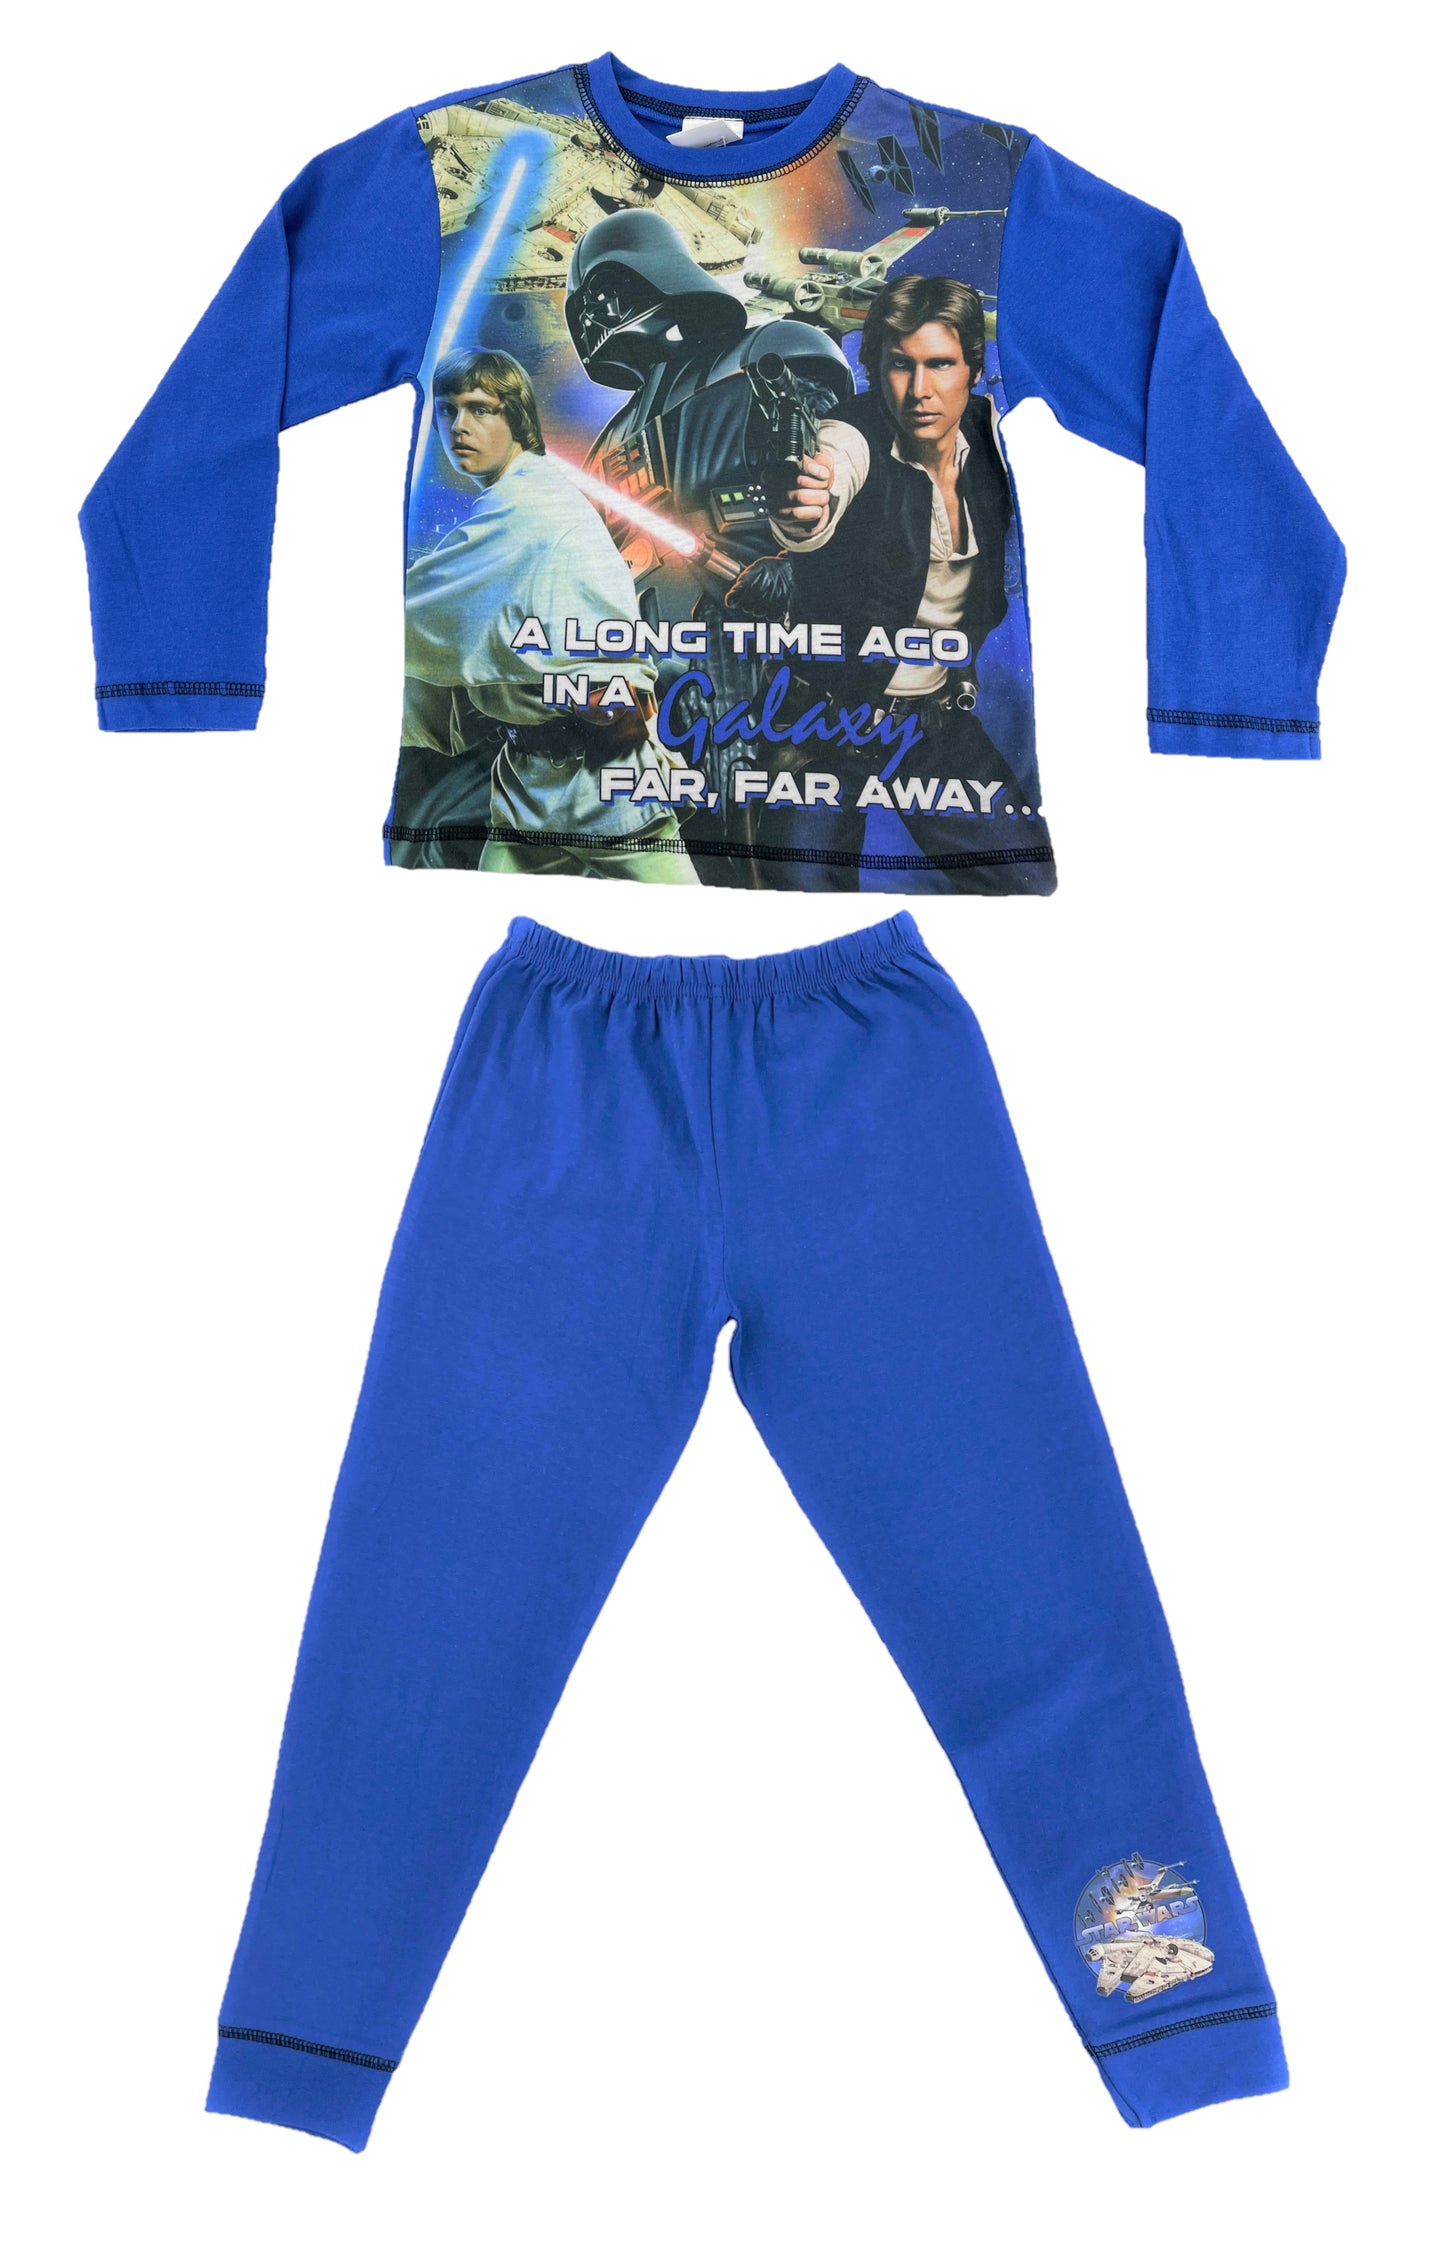 Star Wars "A Long Time Ago" Boys 2 Piece Pyjama Set